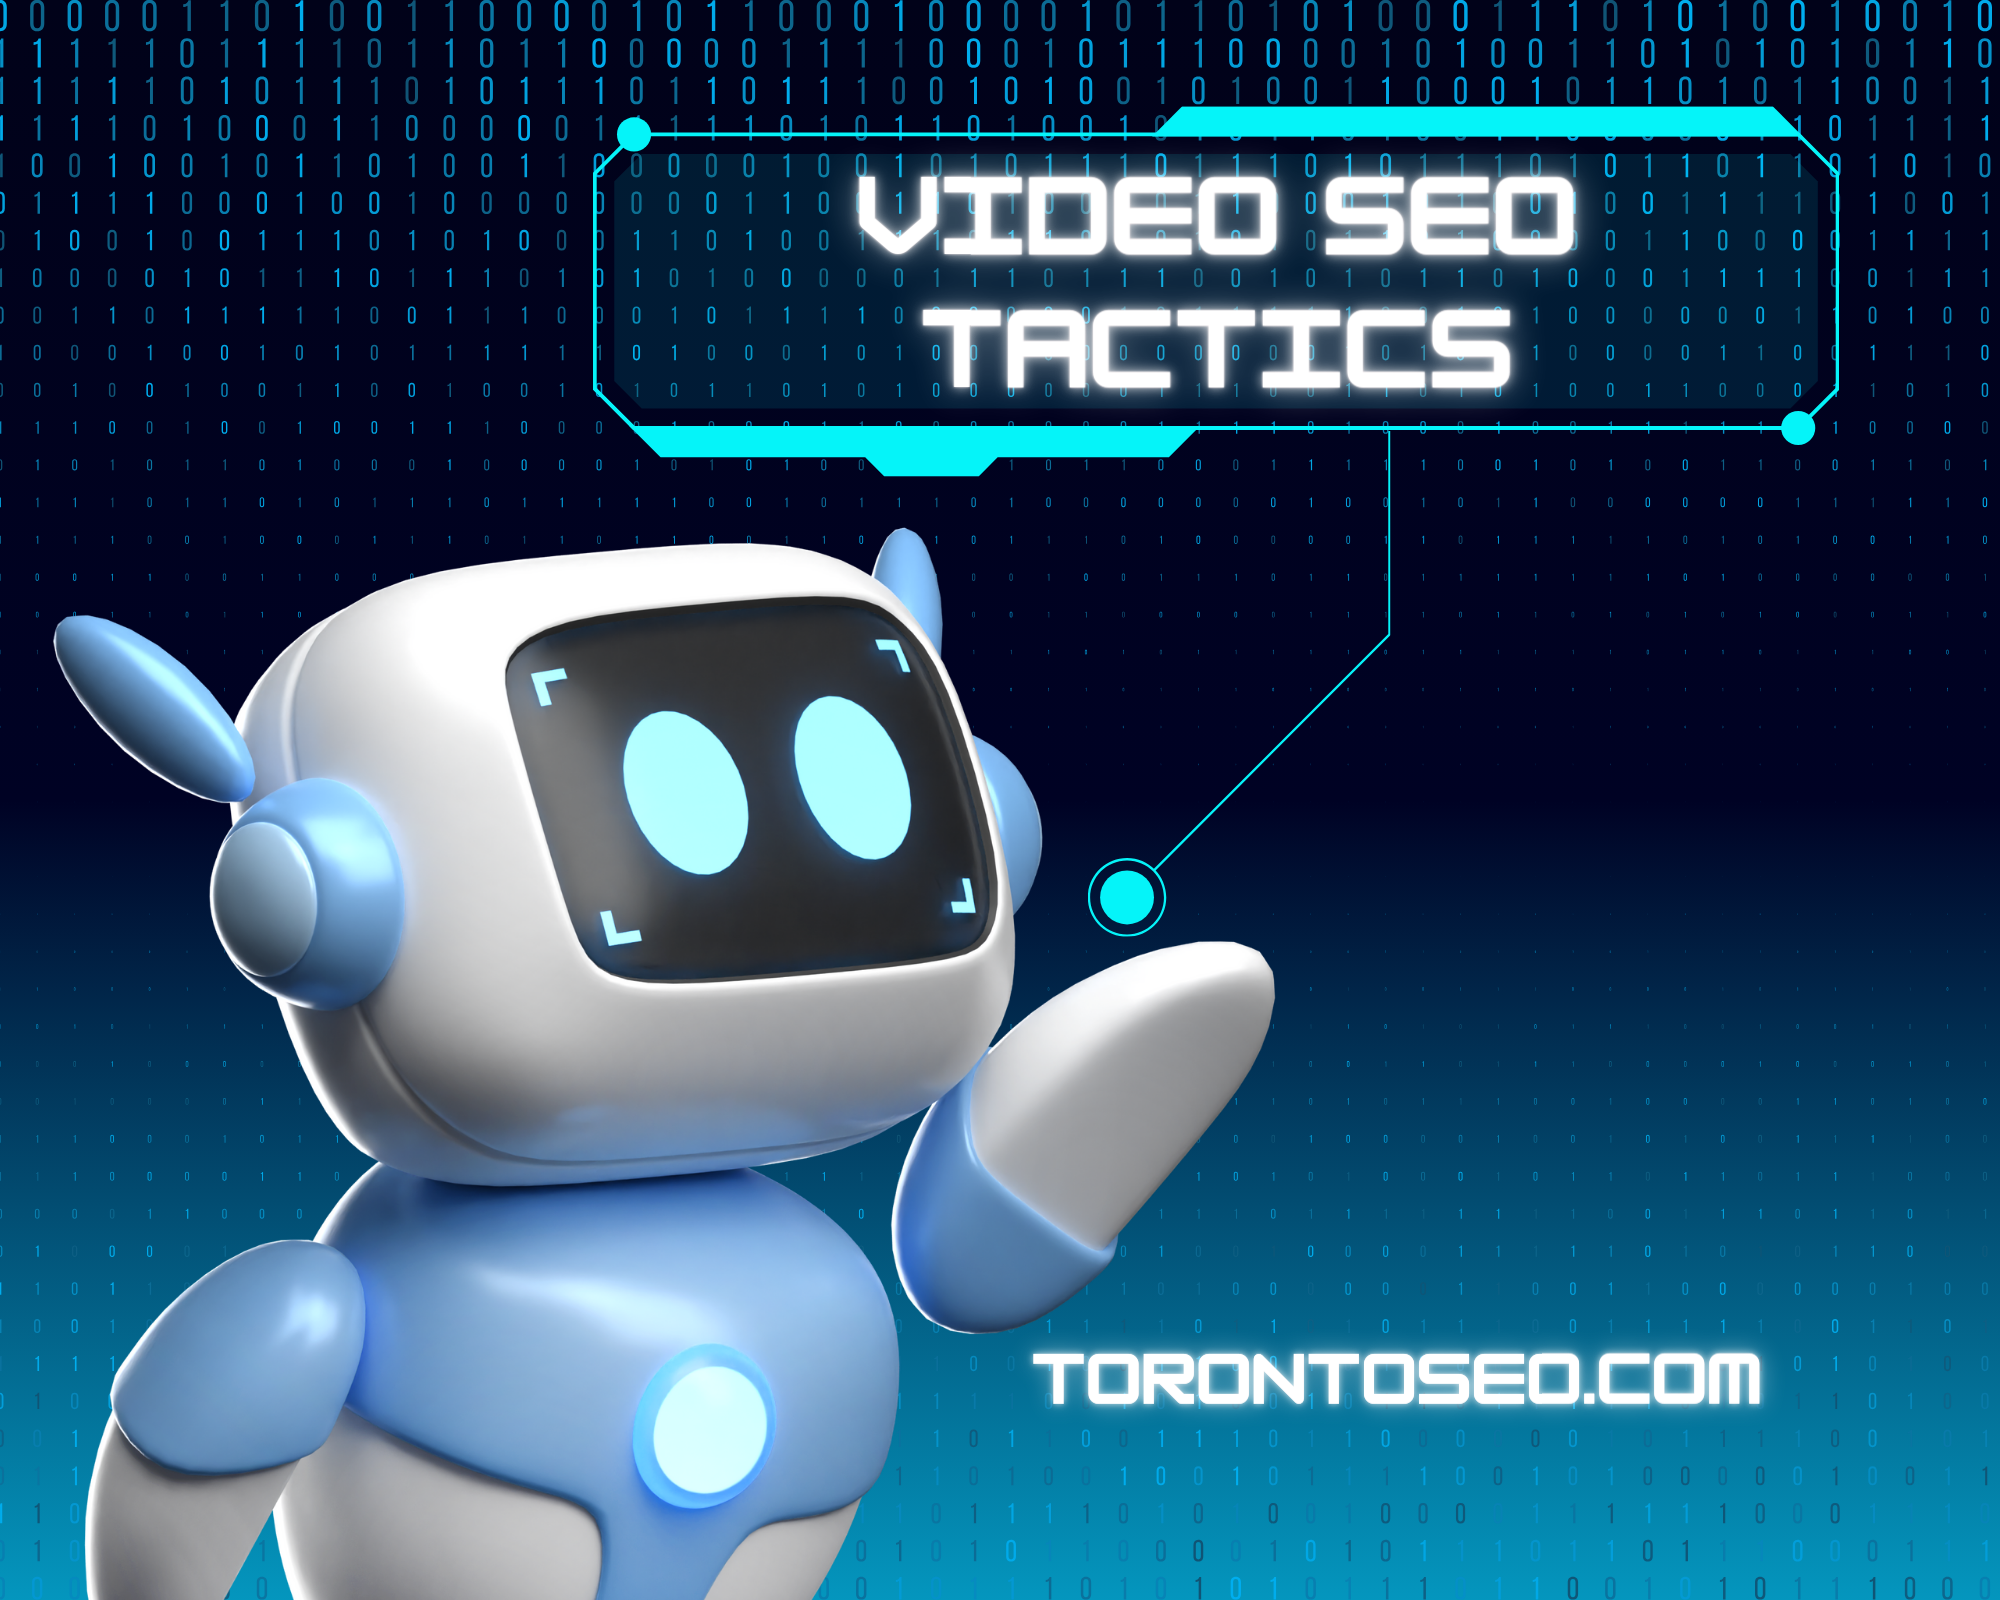 Video SEO Tactics - Toronto SEO